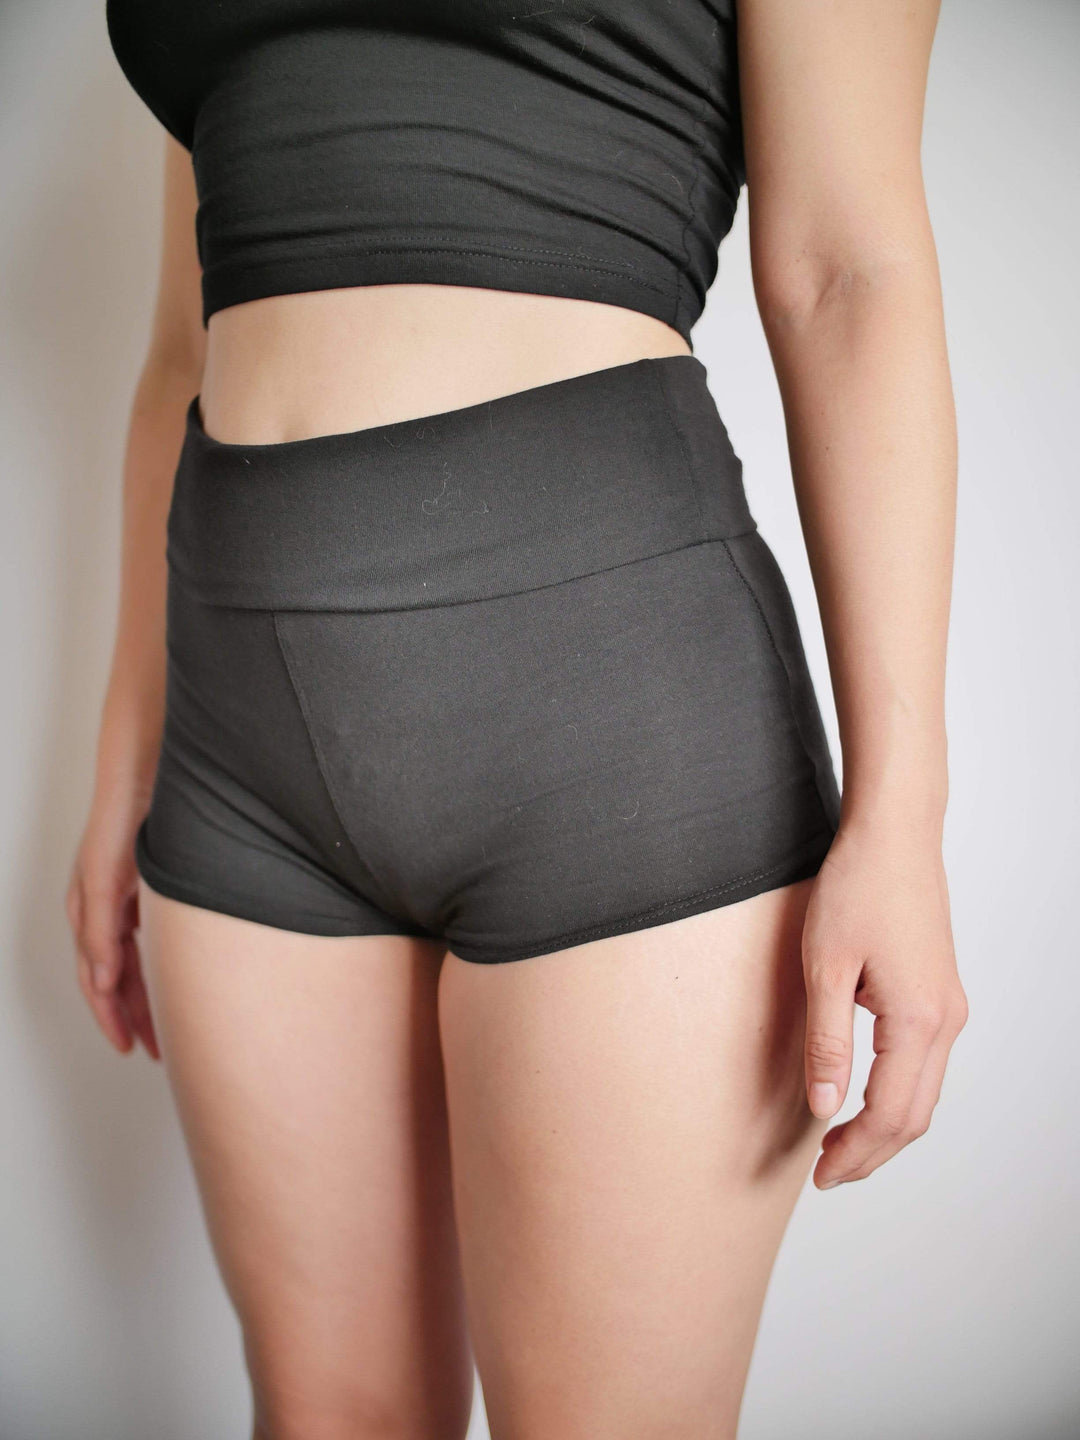 PixelThat Punderwear Yoga Shorts Beam Me Up Hottie Yoga Shorts/Pants